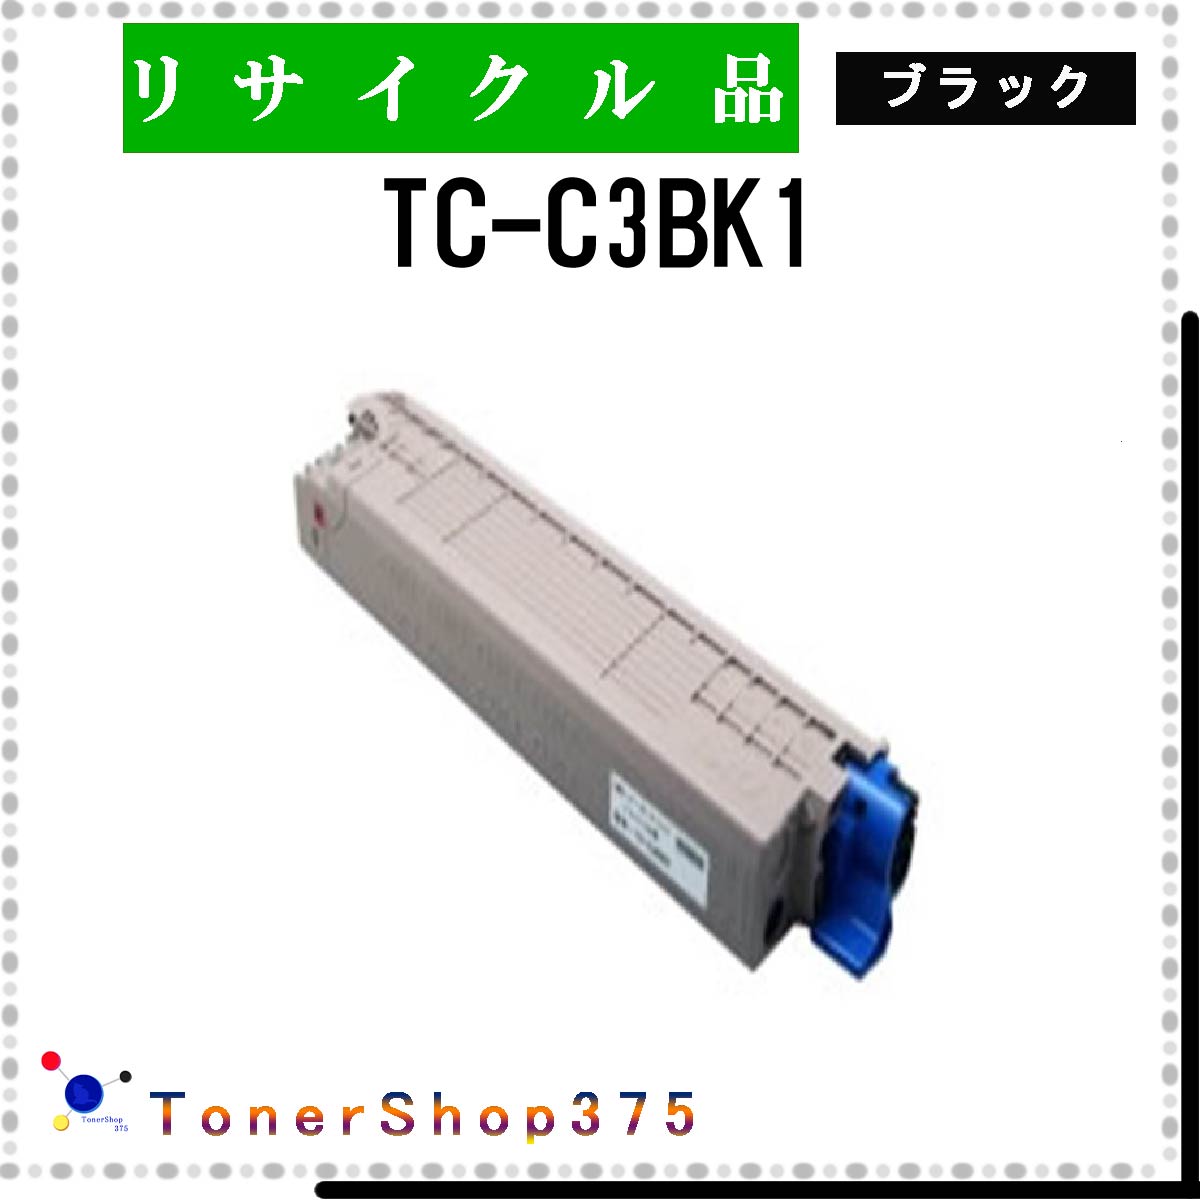 OKI y TC-C3BK1 z ubN TCN gi[ TCNHƉF/ISO擾H蒼 STMCF E&Q ݌ɕi 